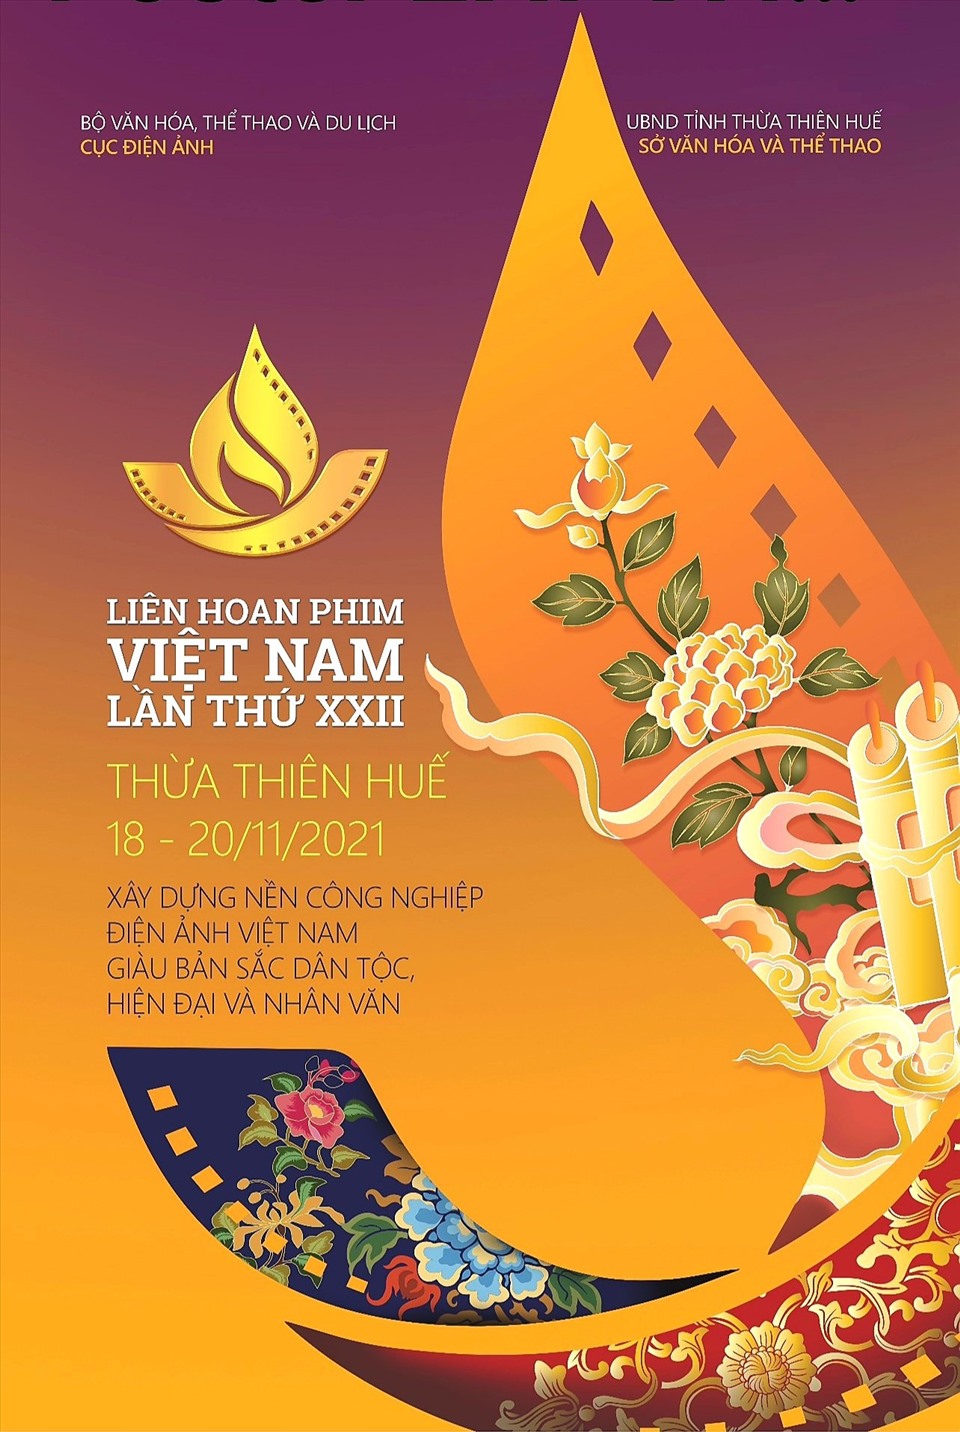 Liên hoan phim Việt Nam lần này là cơ hội để Huế khai thác mạnh hơn nữa tiềm năng điện ảnh.